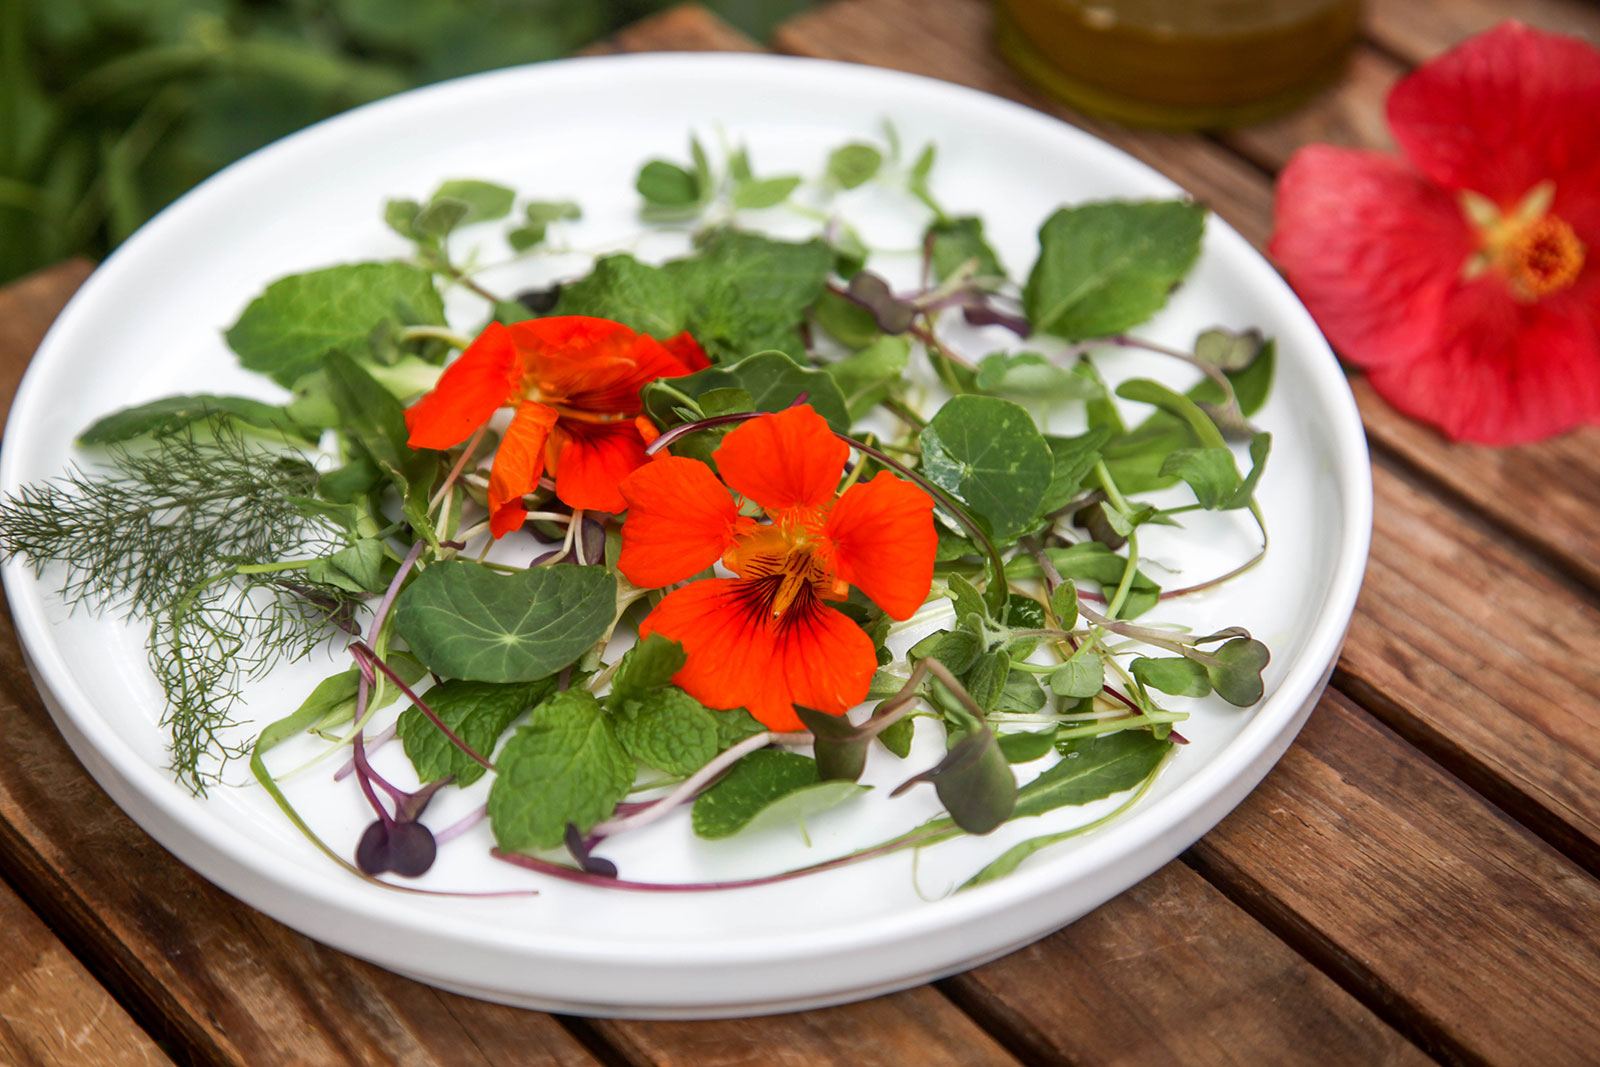 Harvest Salad of Herbs, Greens & Edible Flowers